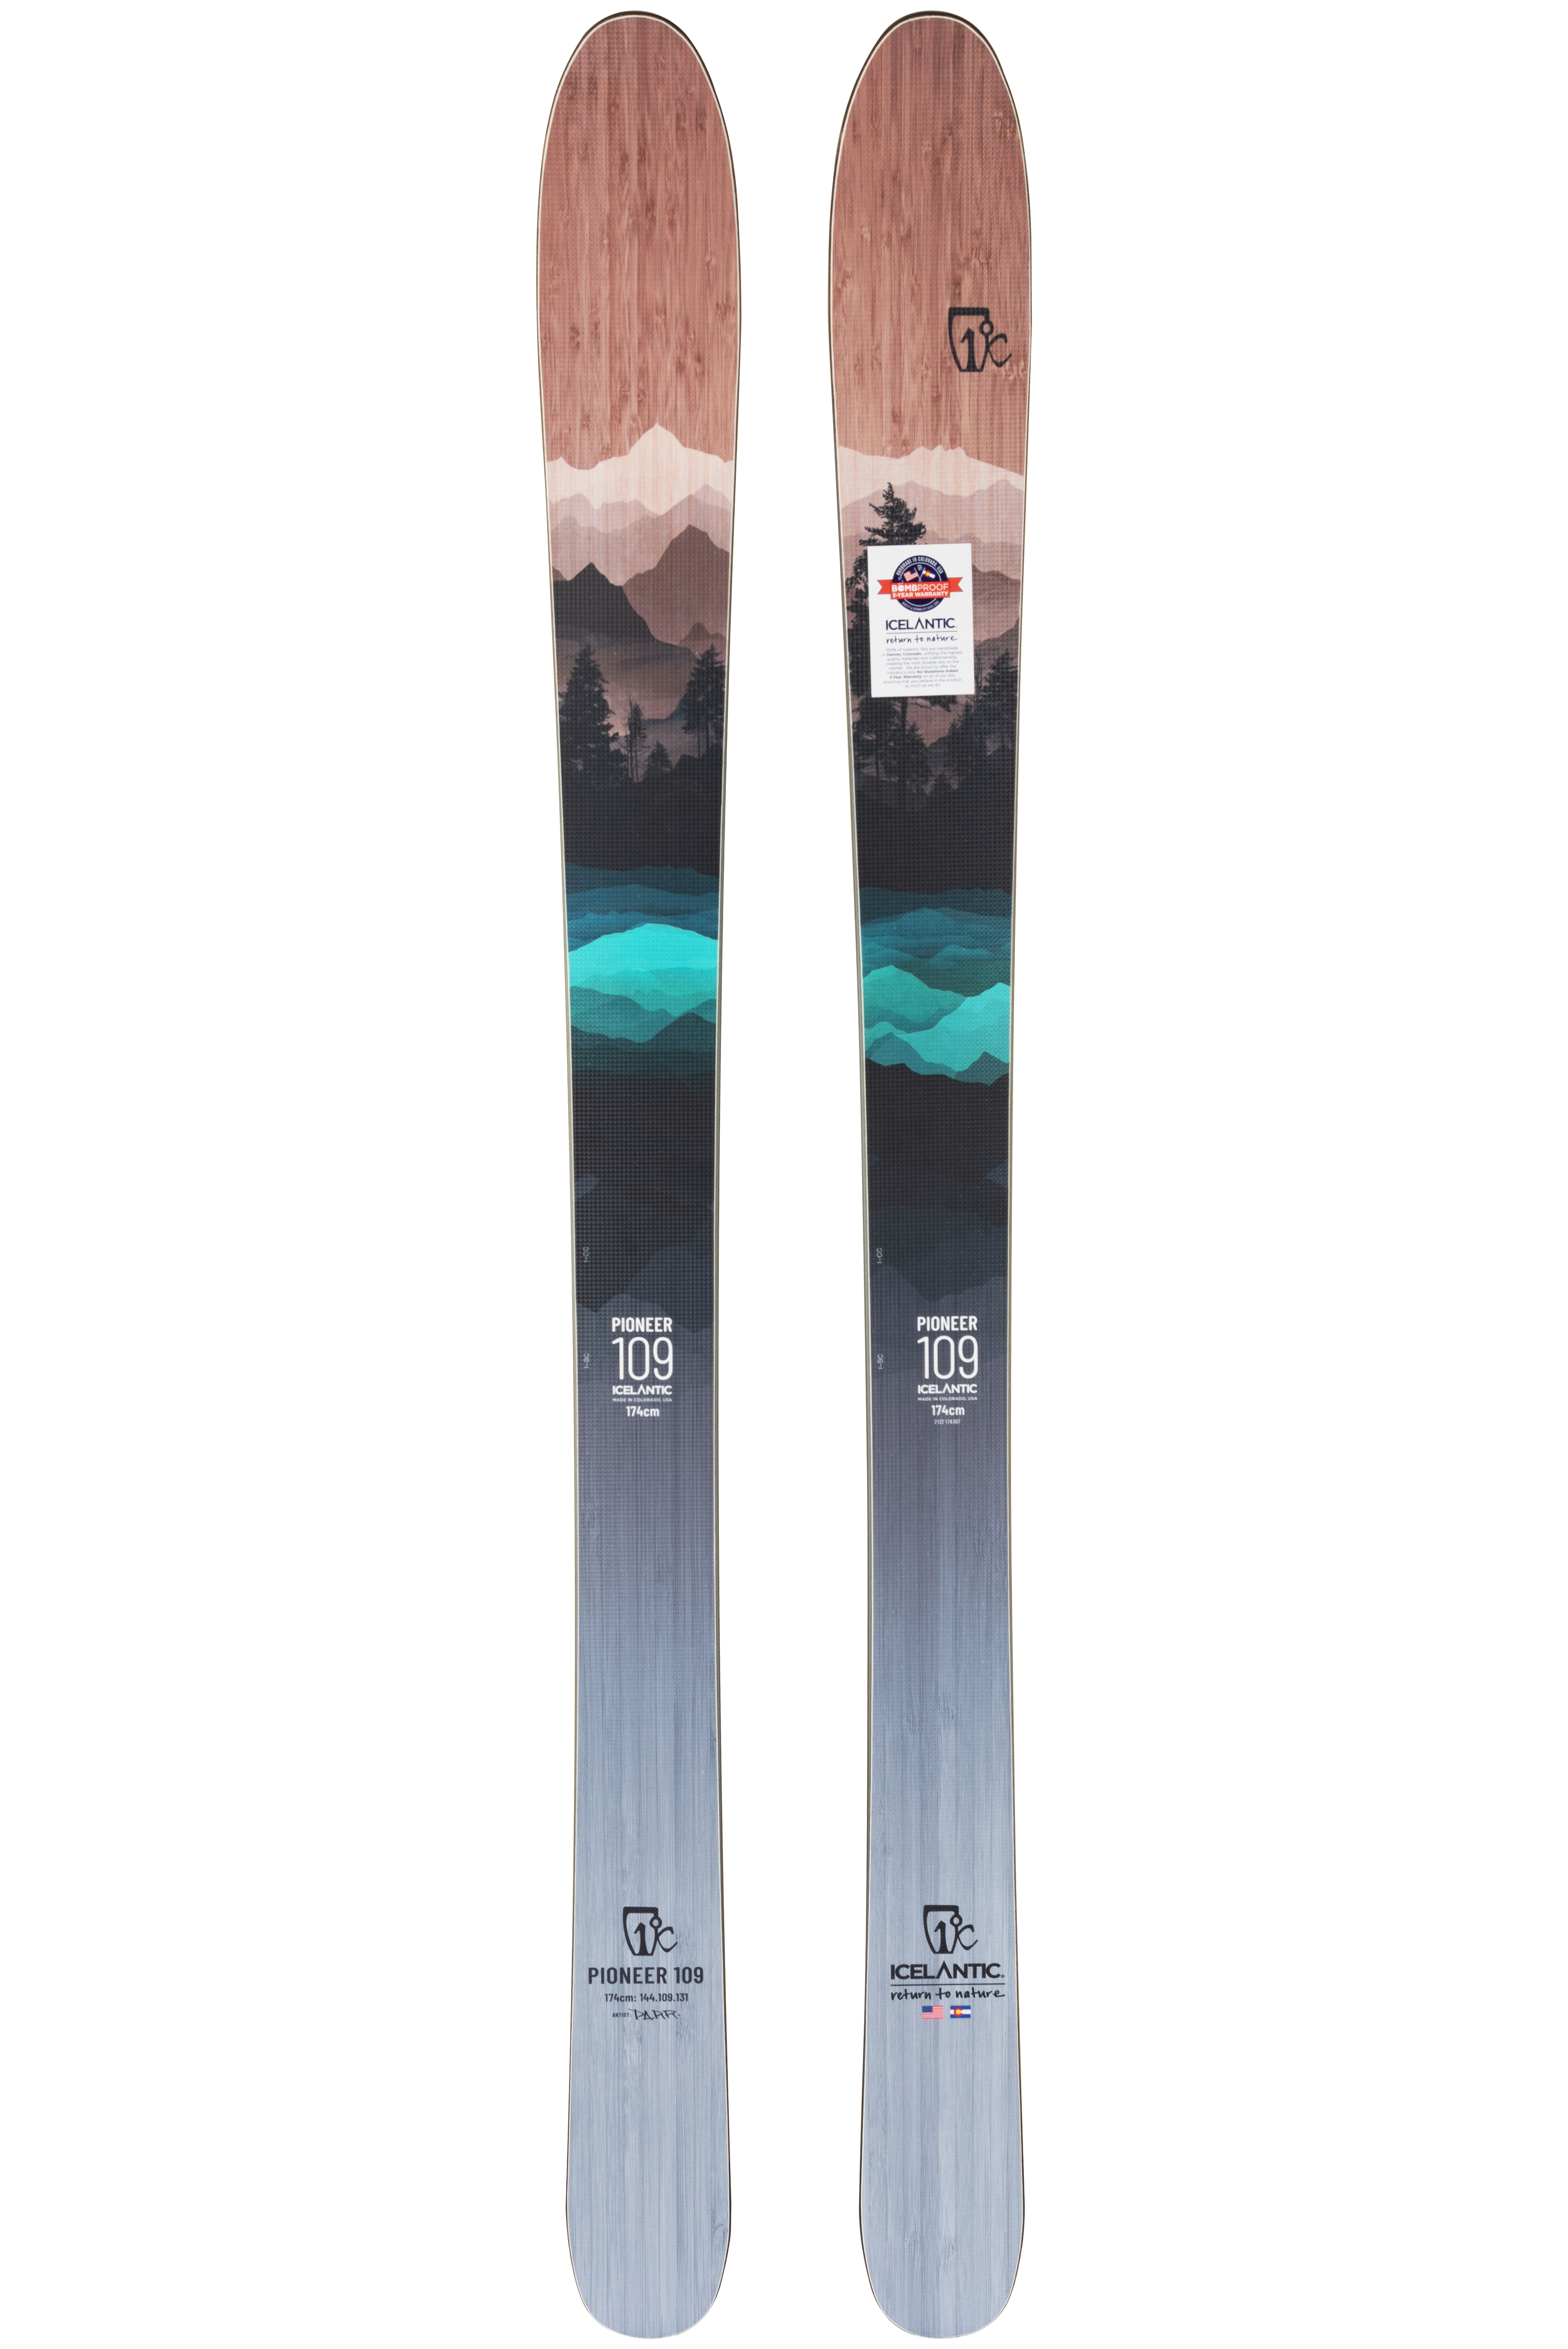 Лыжи Icelantic Pioneer 109 2021/2022 174cm сравнить характеристики и купить